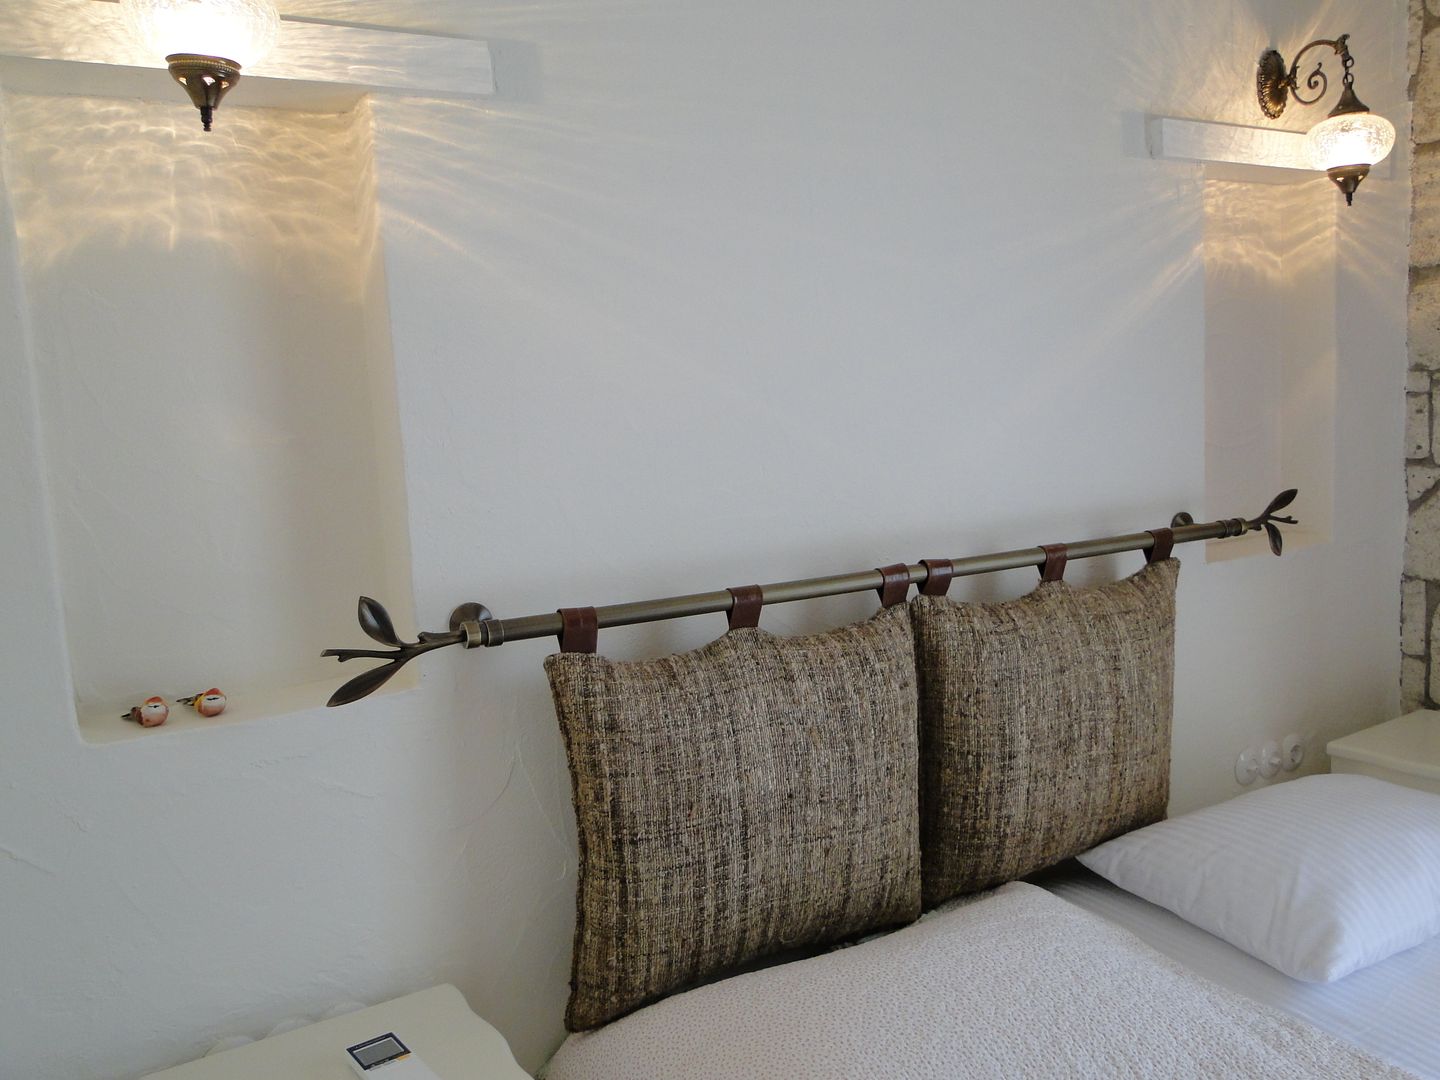 Yu-Ga Otel Tuncer Sezgin İç Mimarlık Akdeniz Yatak Odası Yataklar & Yatak Başları